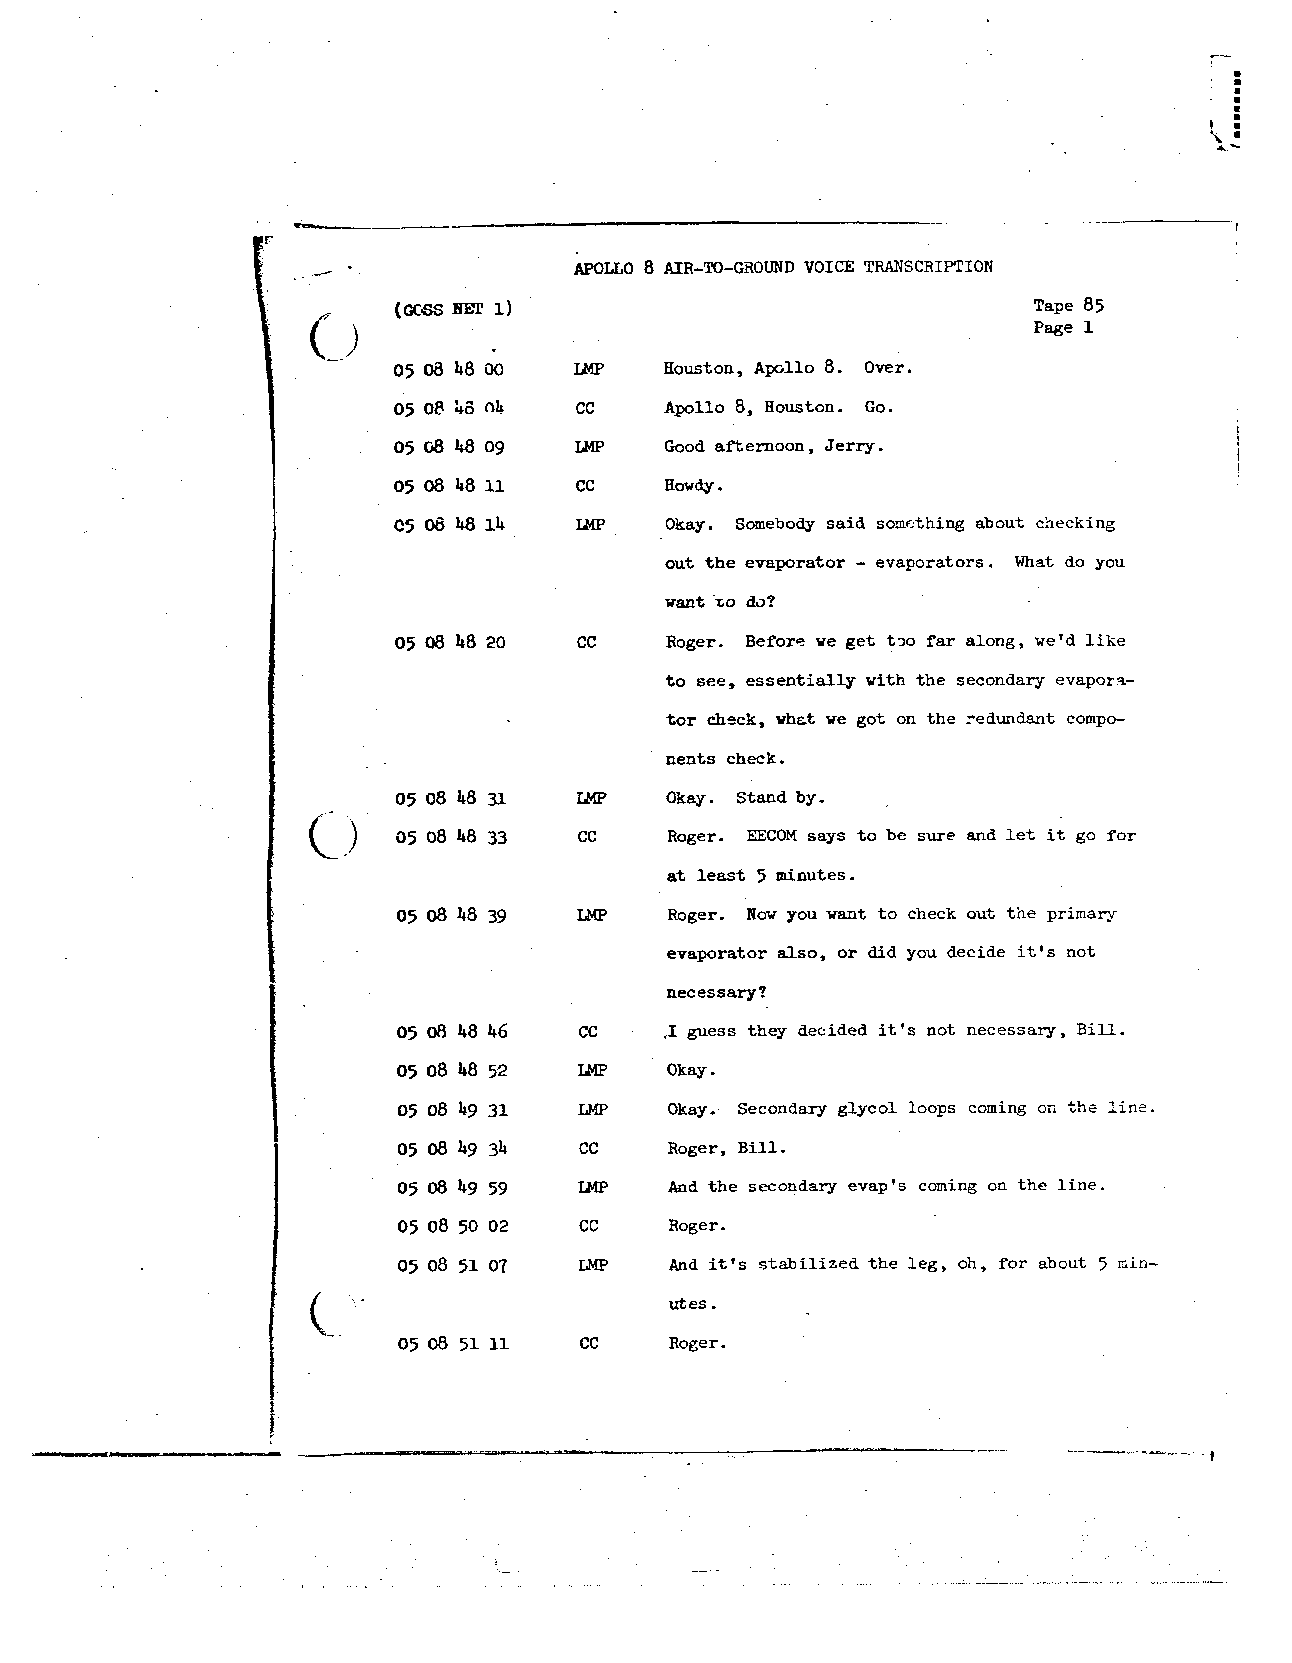 Page 702 of Apollo 8’s original transcript